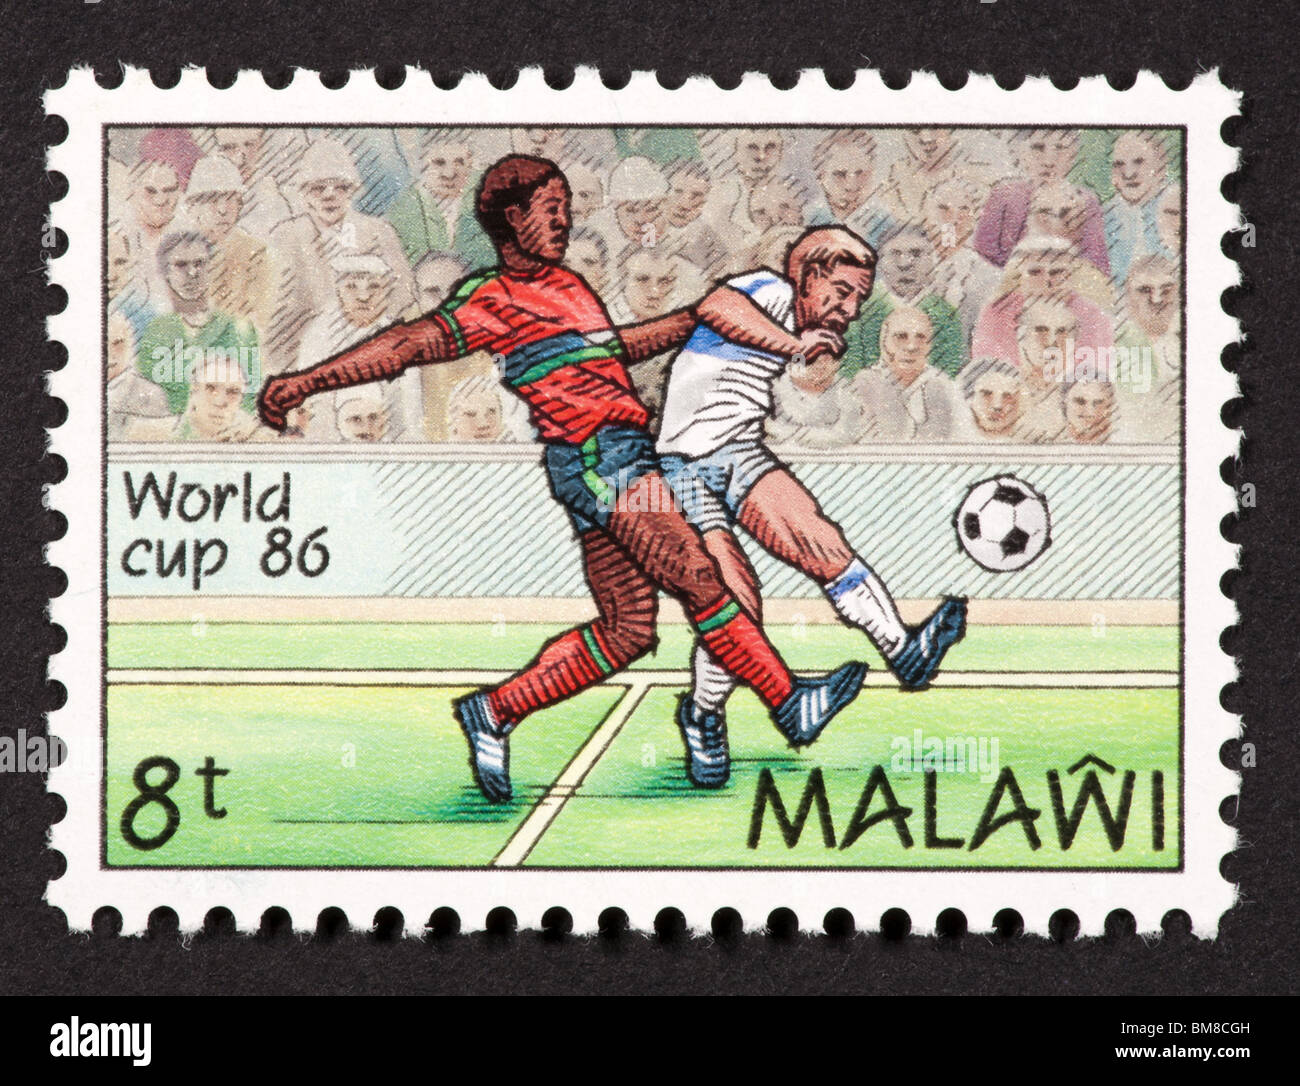 Timbre-poste du Malawi représentant deux joueurs de soccer (football) dans la Coupe du Monde 1986. Banque D'Images